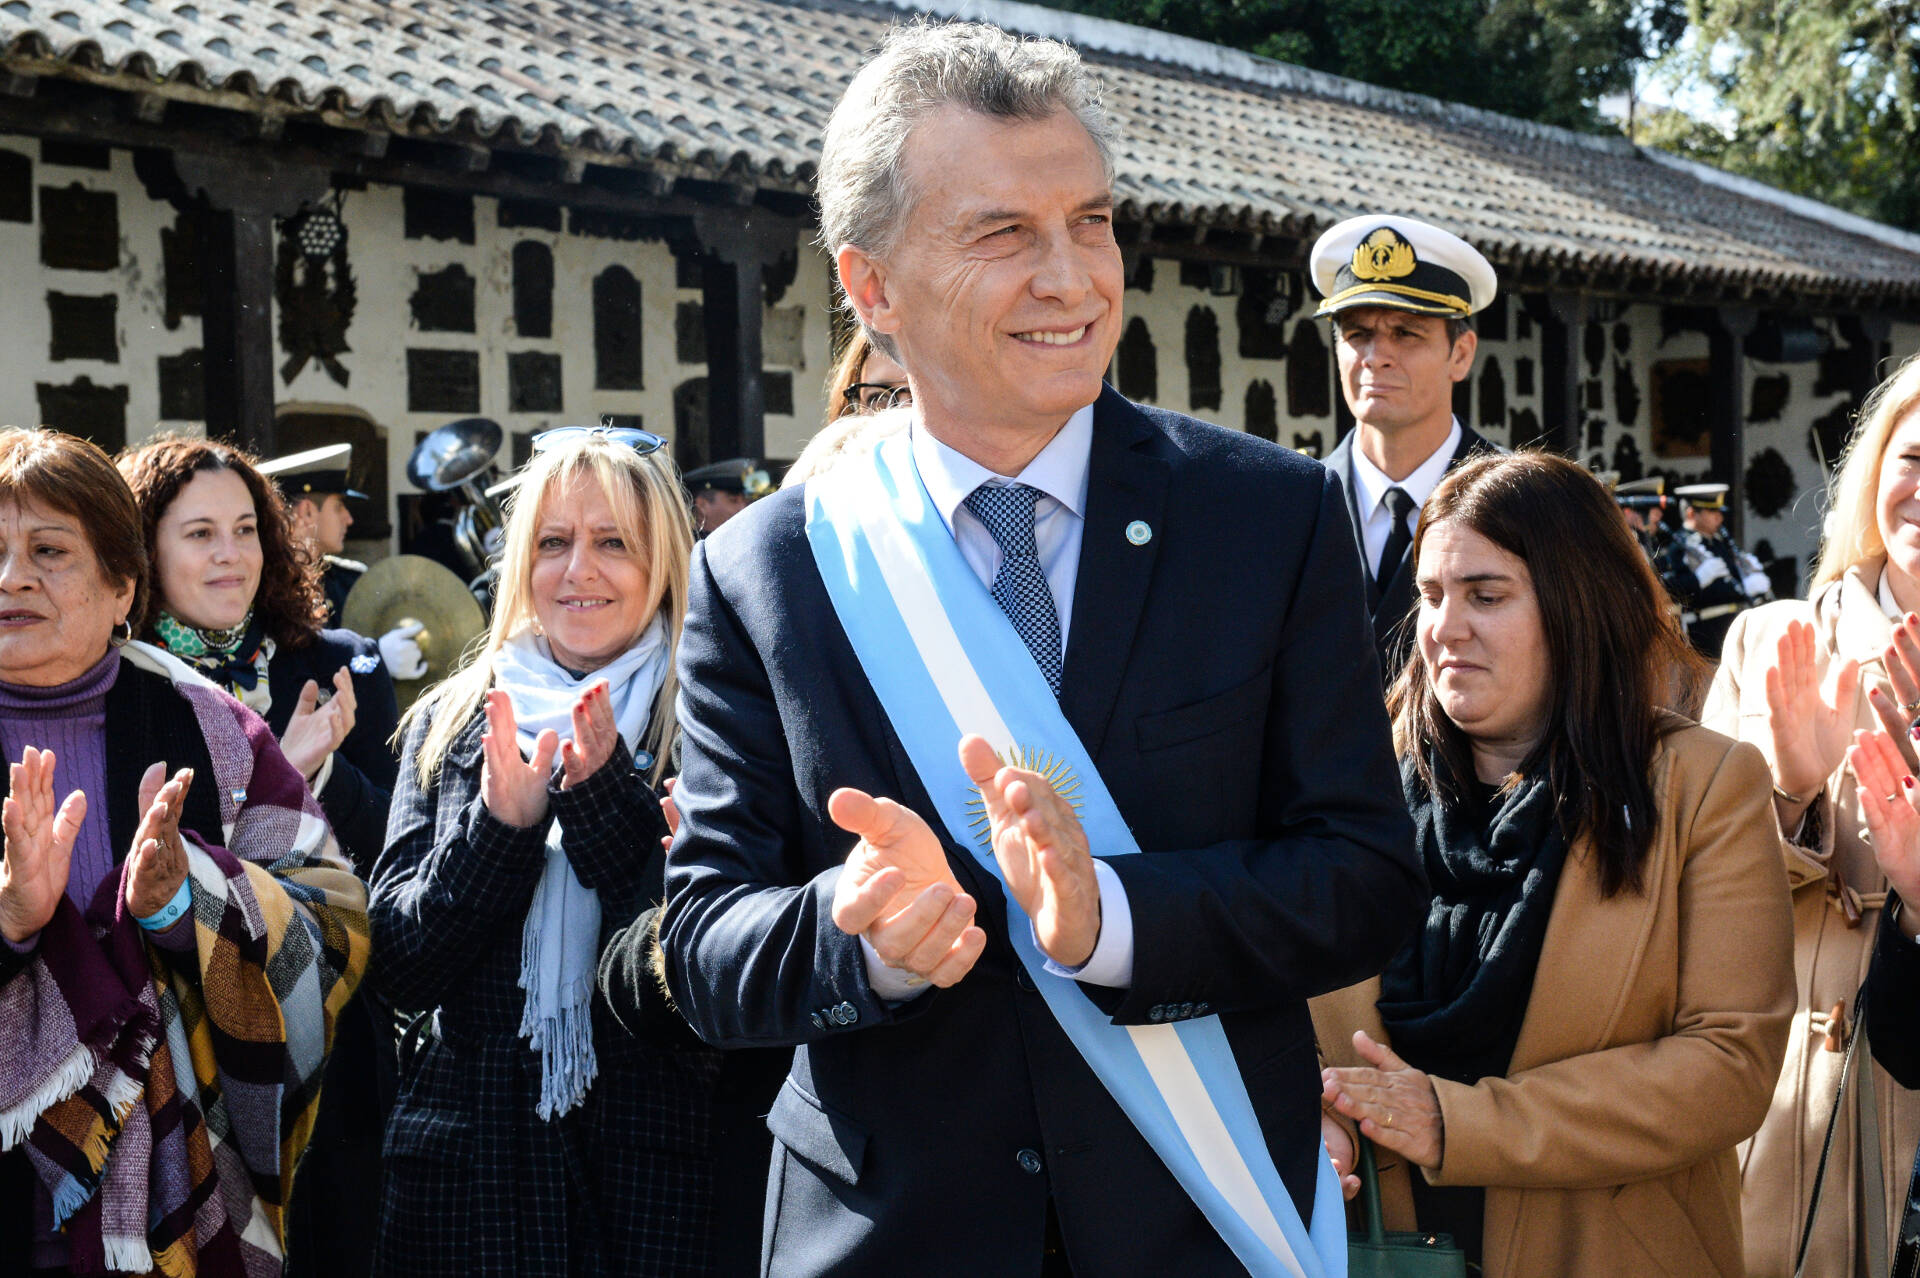 Macri convocó a seguir construyendo una Argentina distinta, normal, predecible y equitativa